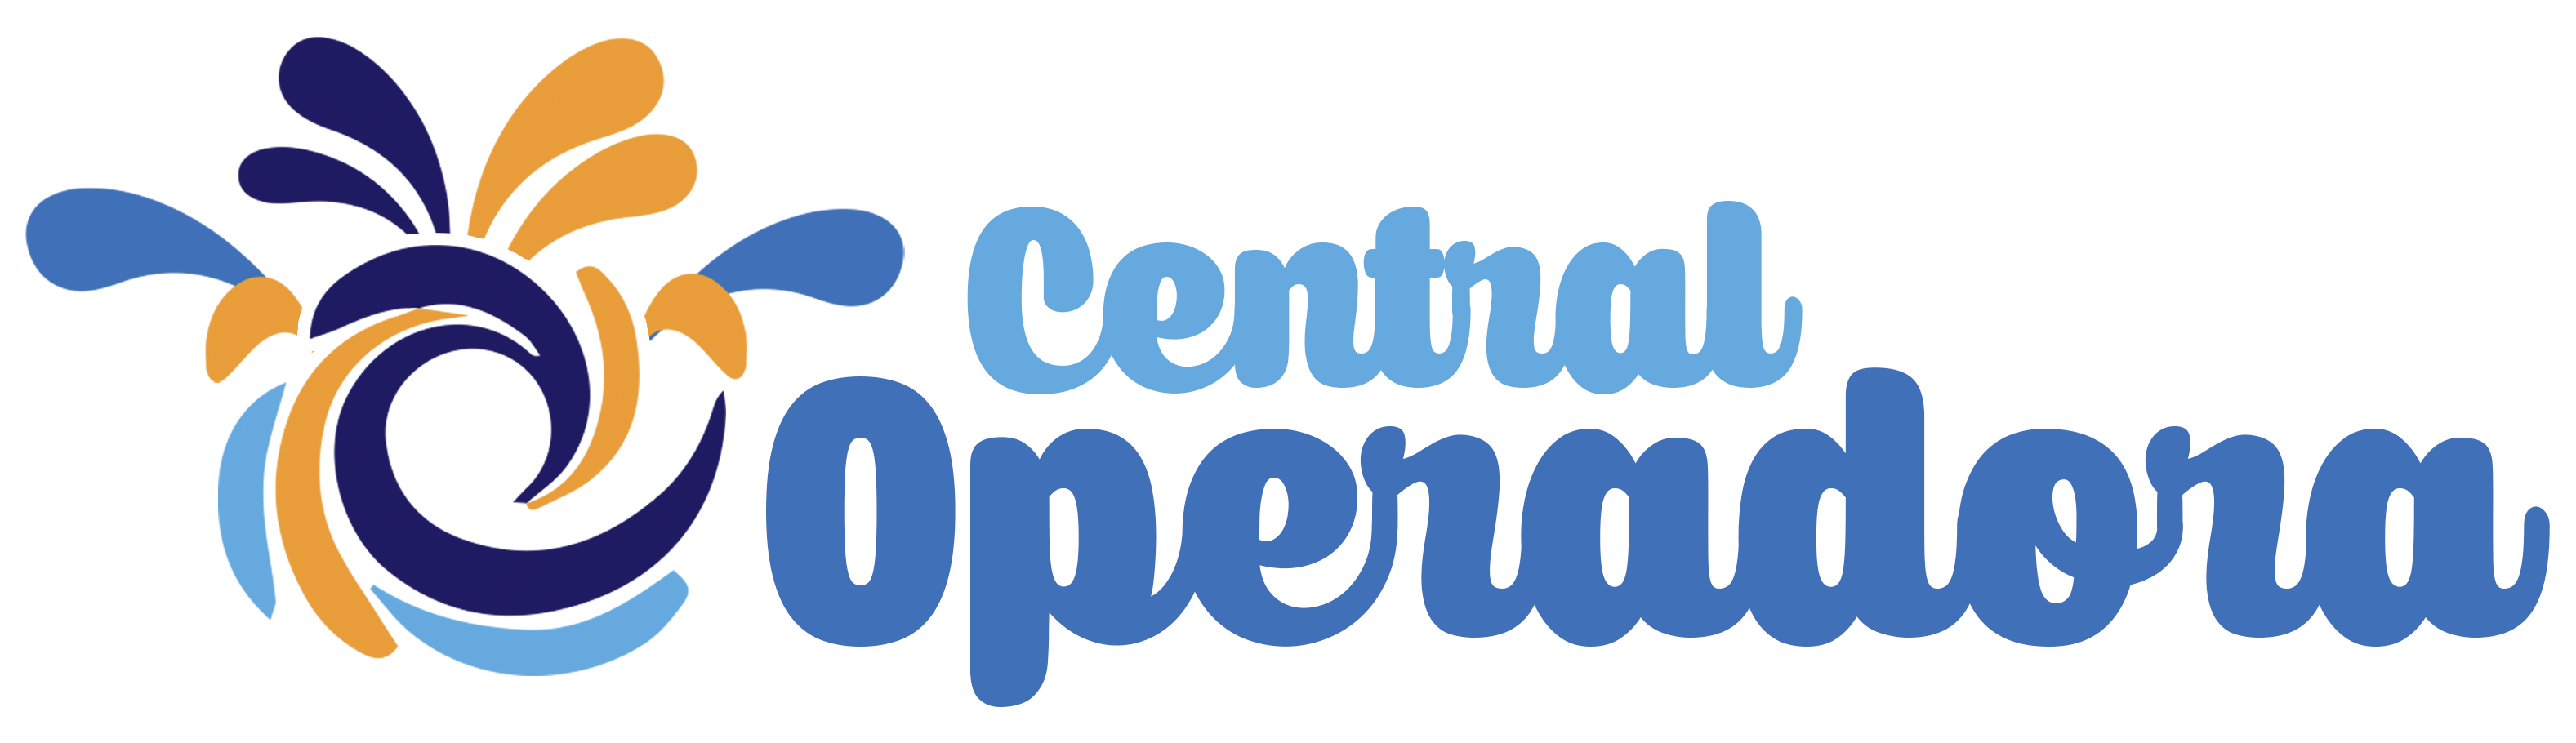  Central Operadora